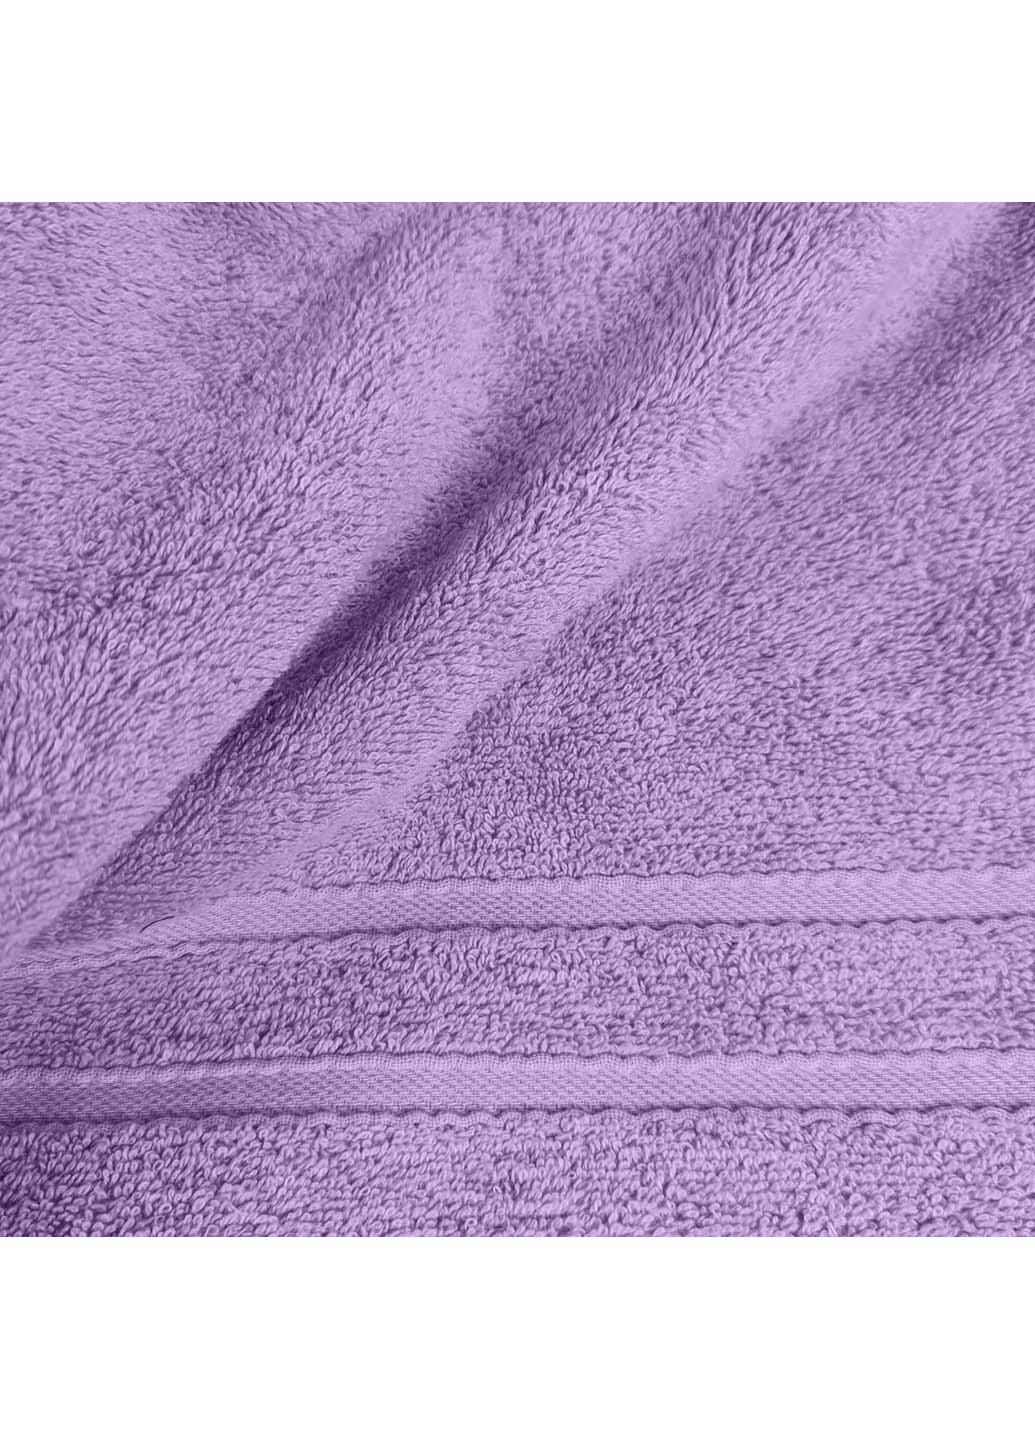 Cosas полотенце махровое 70х140 см фиолетовый производство -